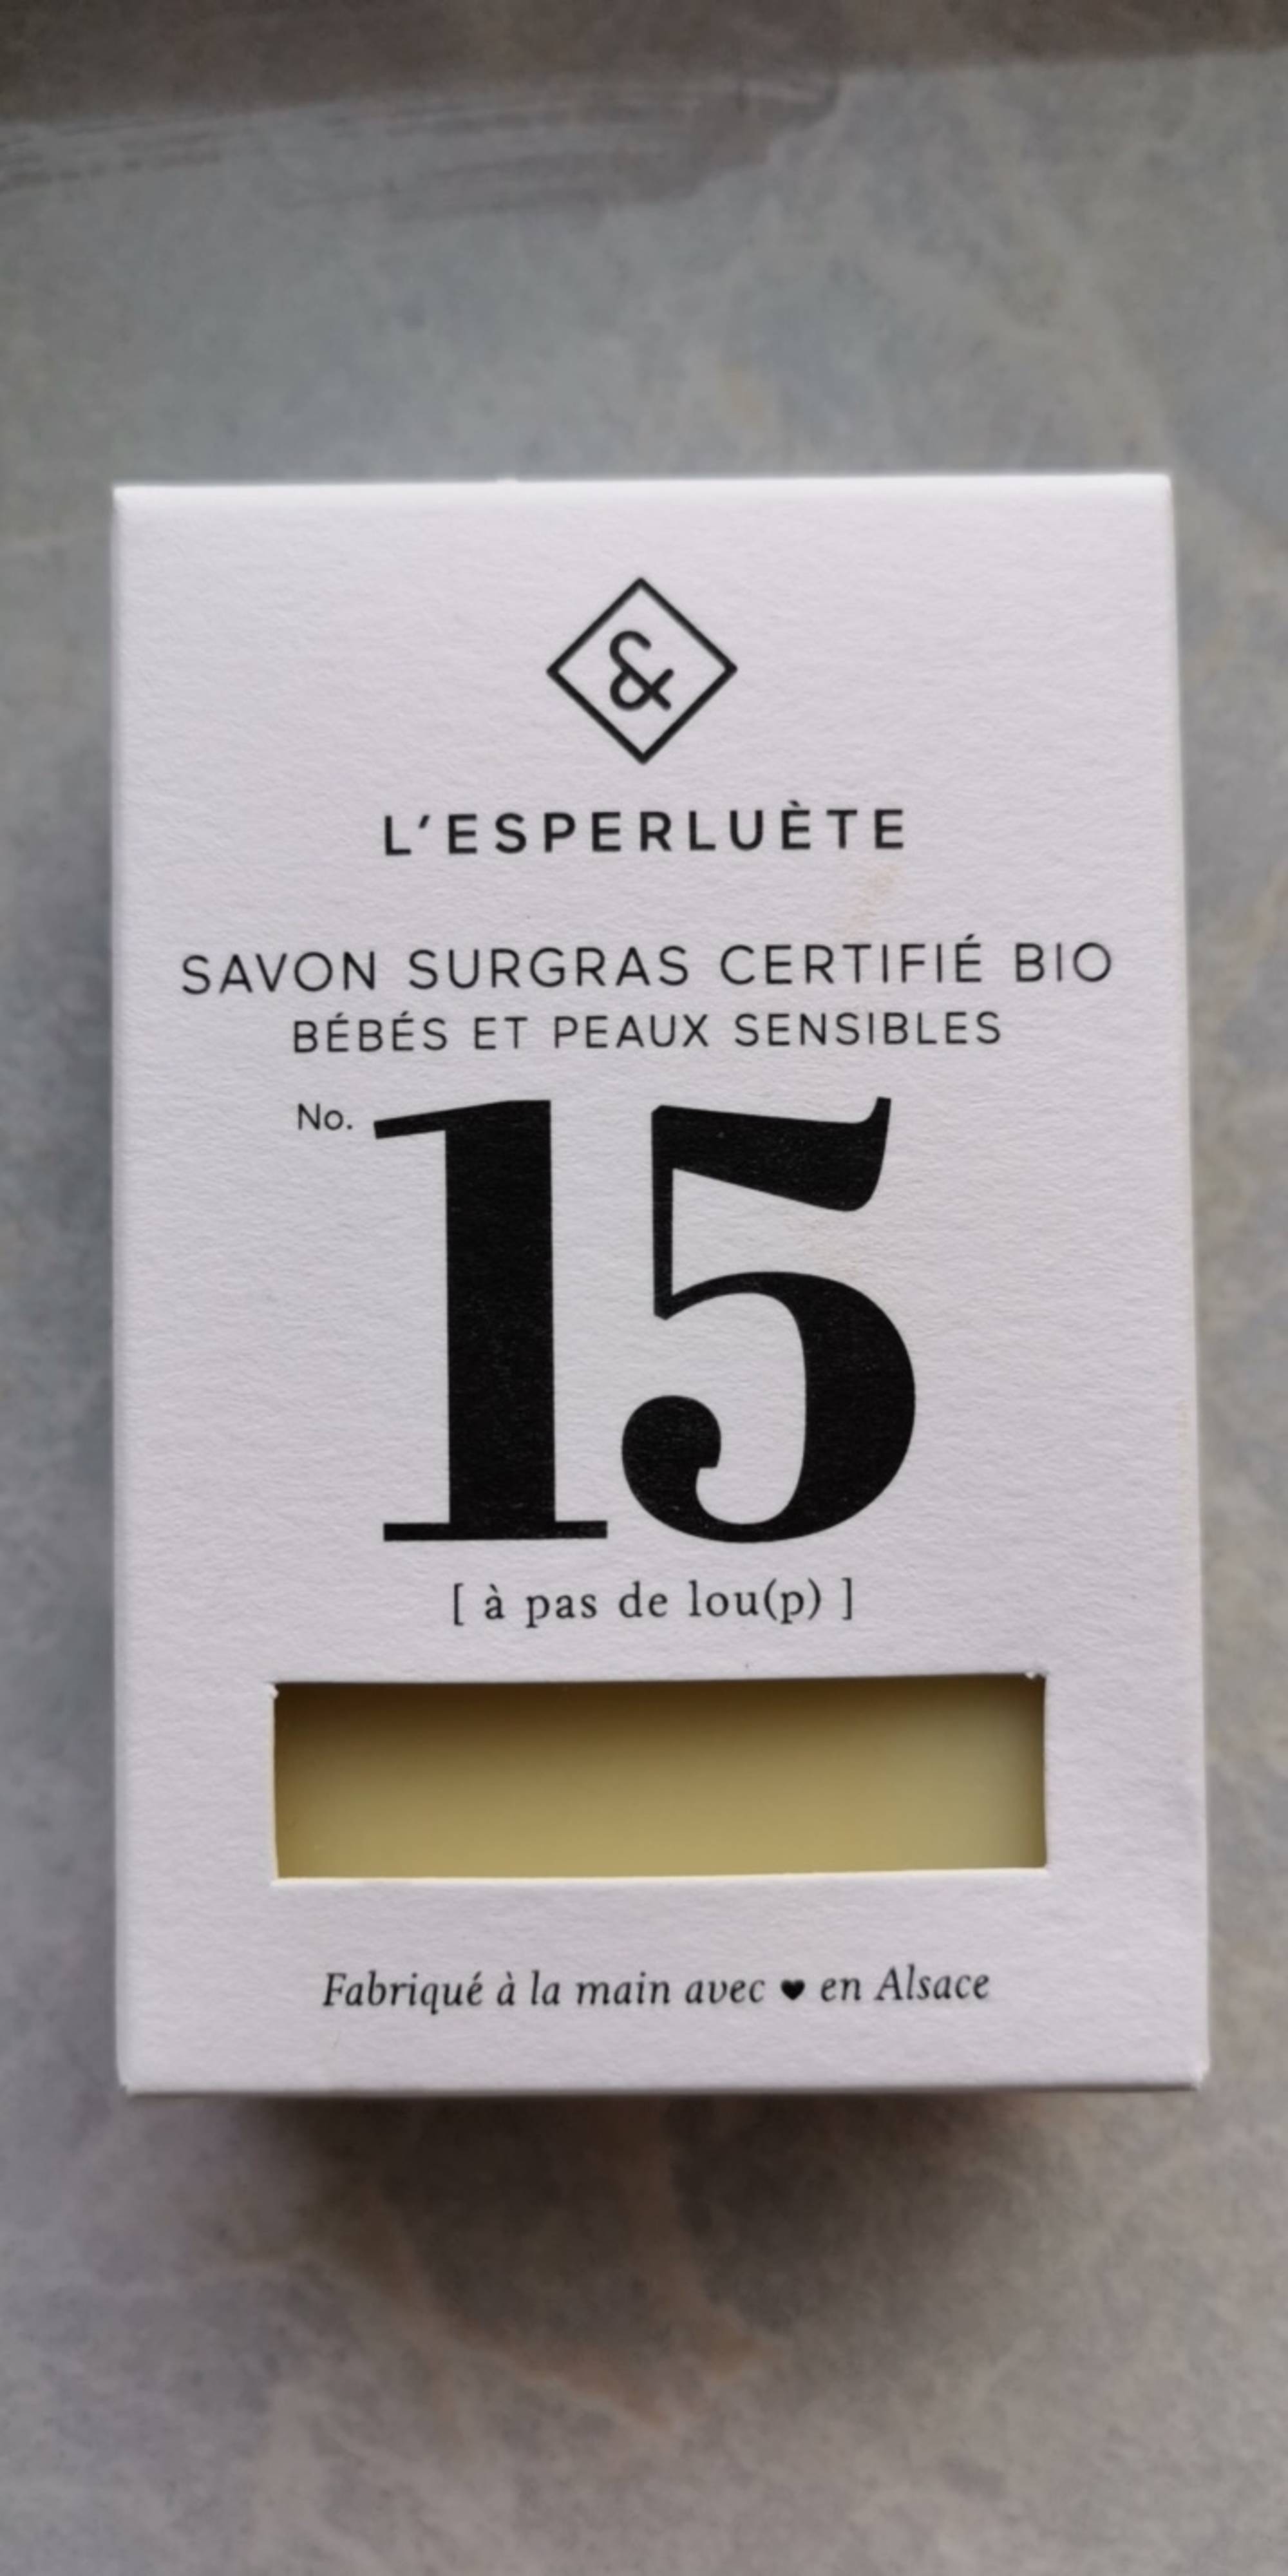 L'ESPERLUÈTE - Savon surgras certifié bio no. 15 a pas de lou(p)